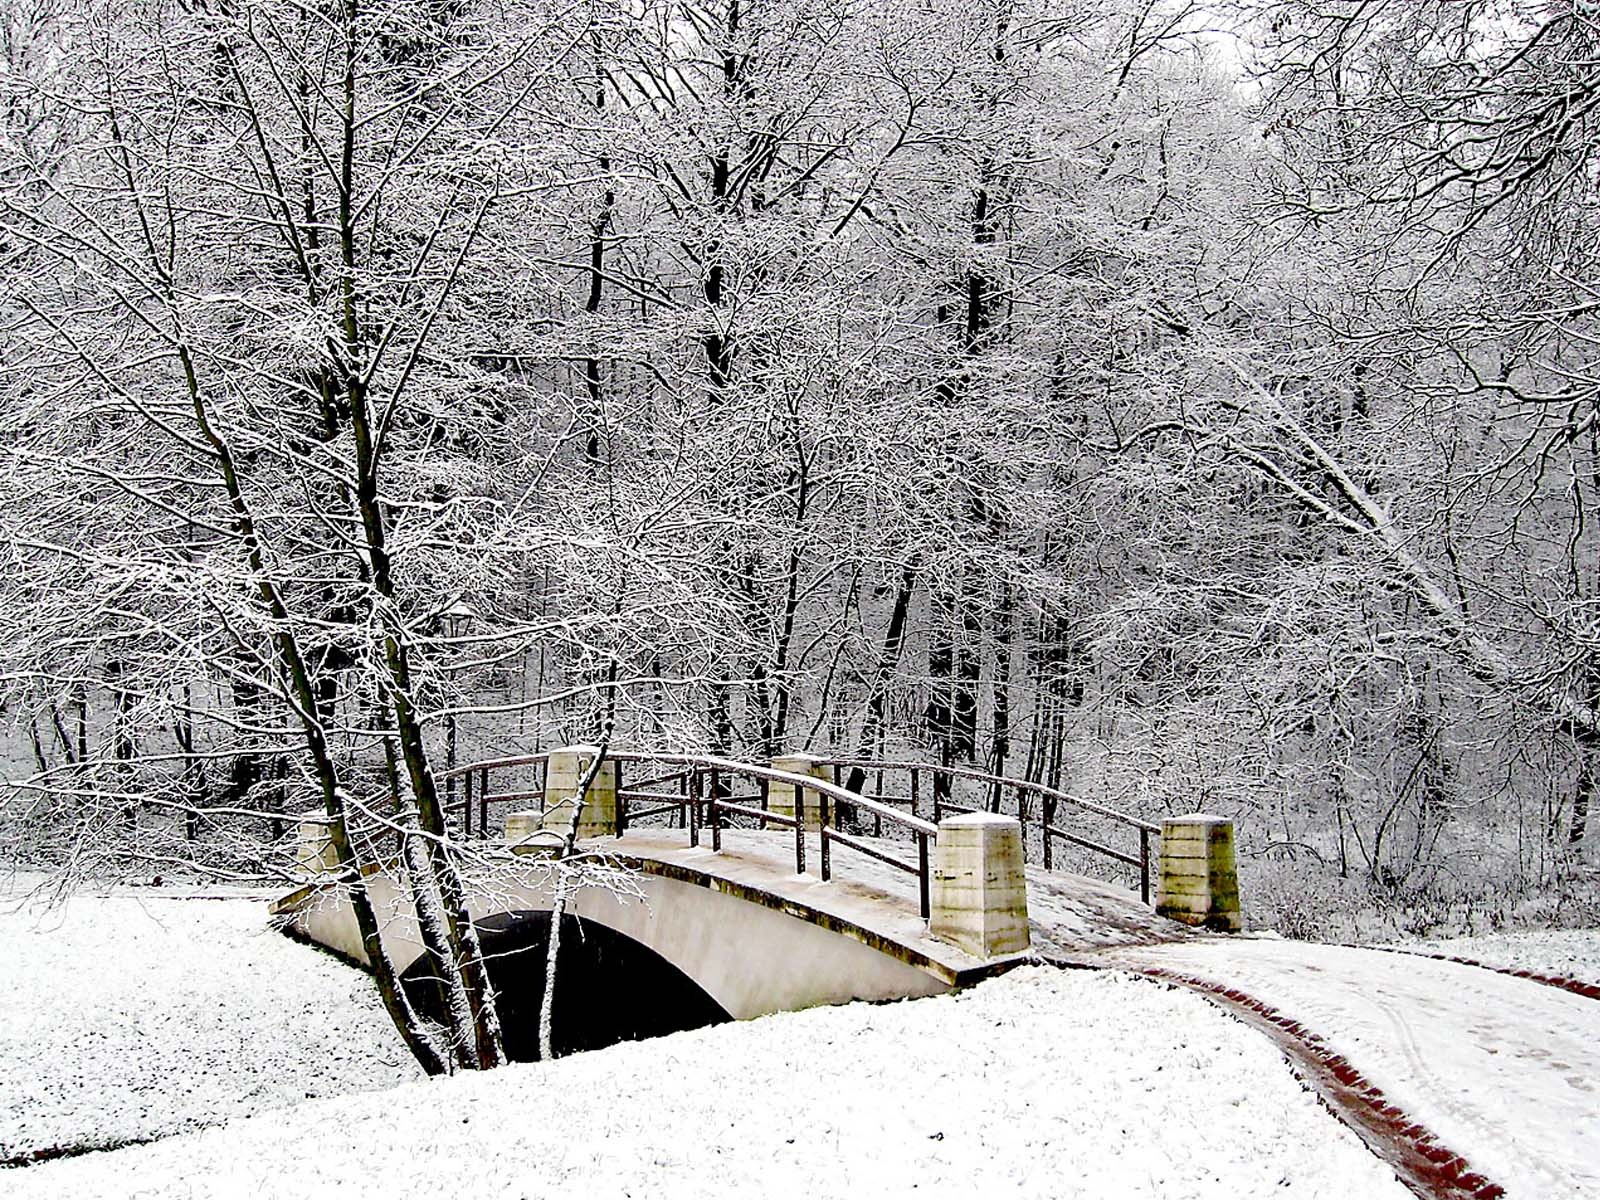 Sfondi Paesaggi Invernali Natalizi.Sfondi Desktop Hd Natale 2013 Foresta Innevata Sfondi Hd Gratis